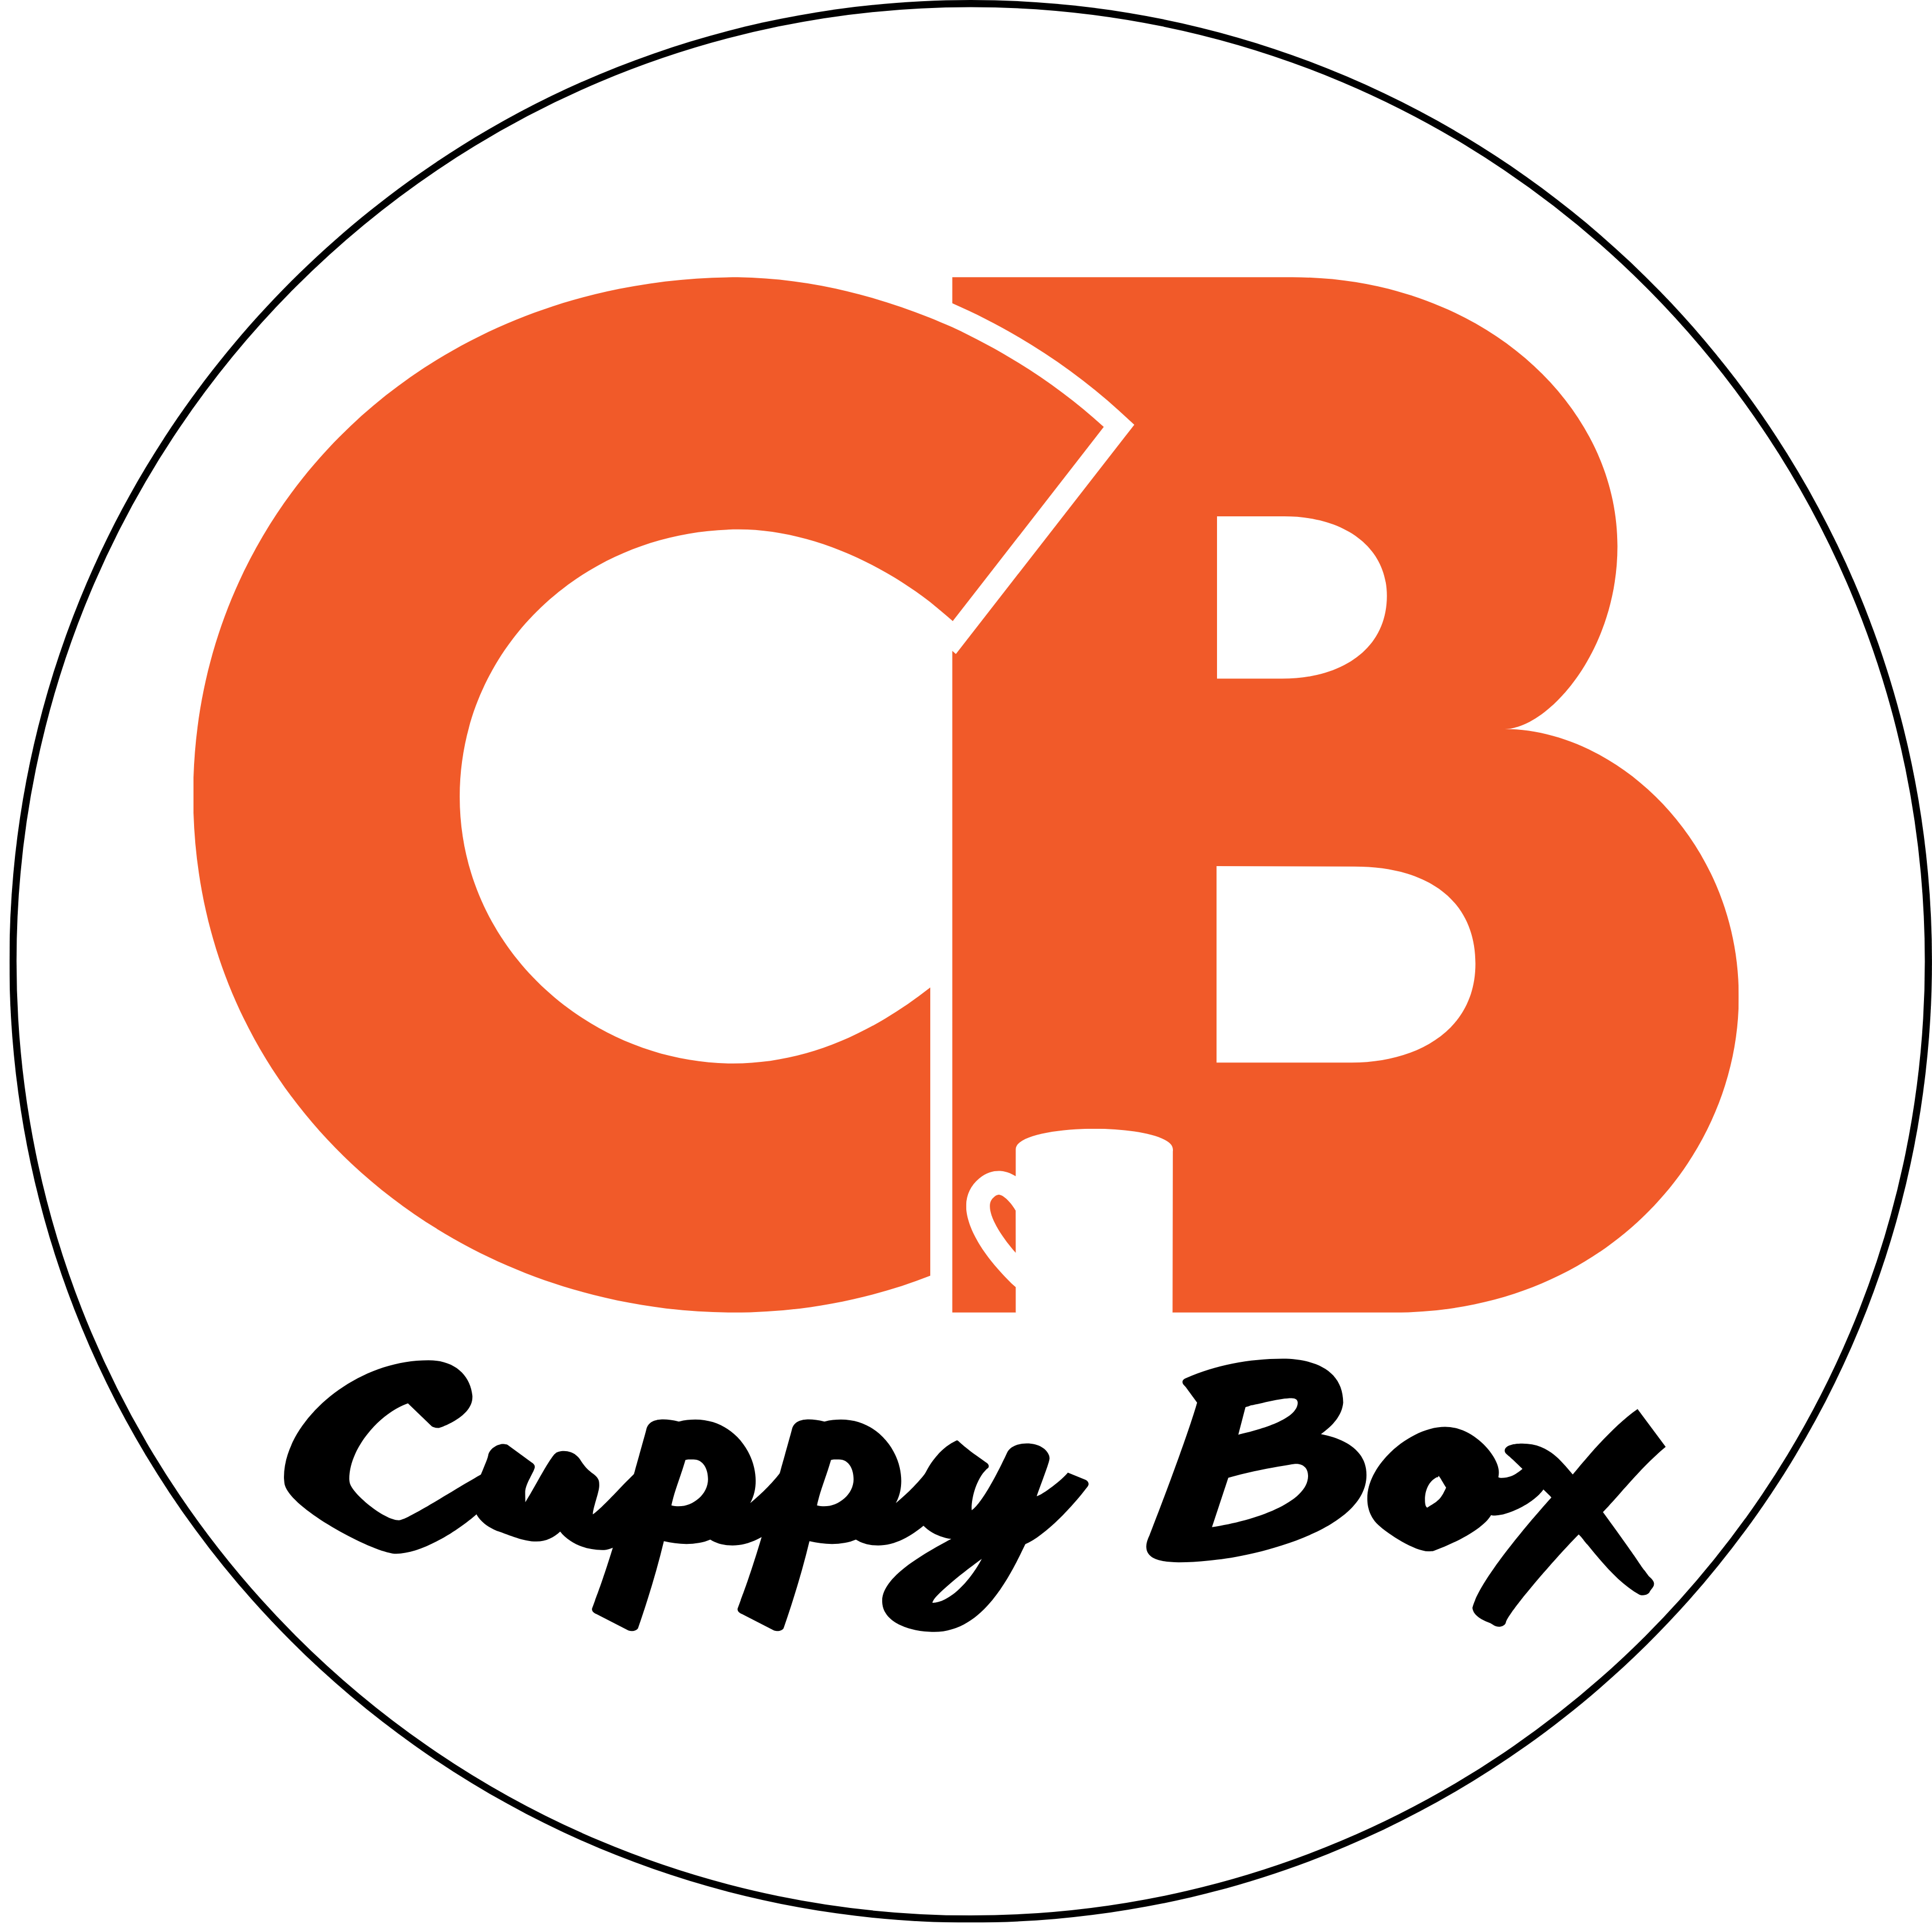 CuppyBox